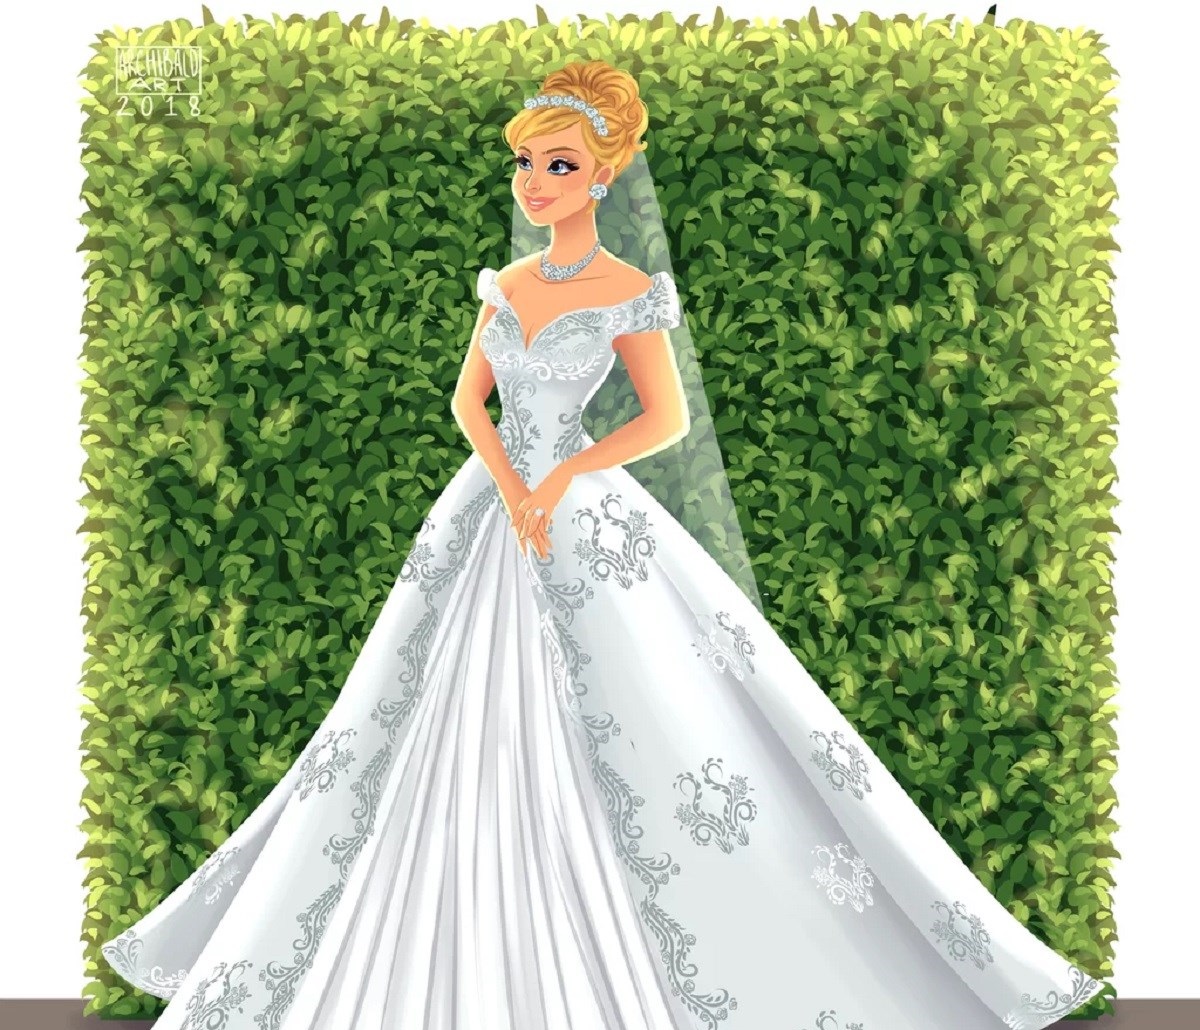 پرنسس-های-دیزنی-در-لباس-های-زیبای-عروس-4